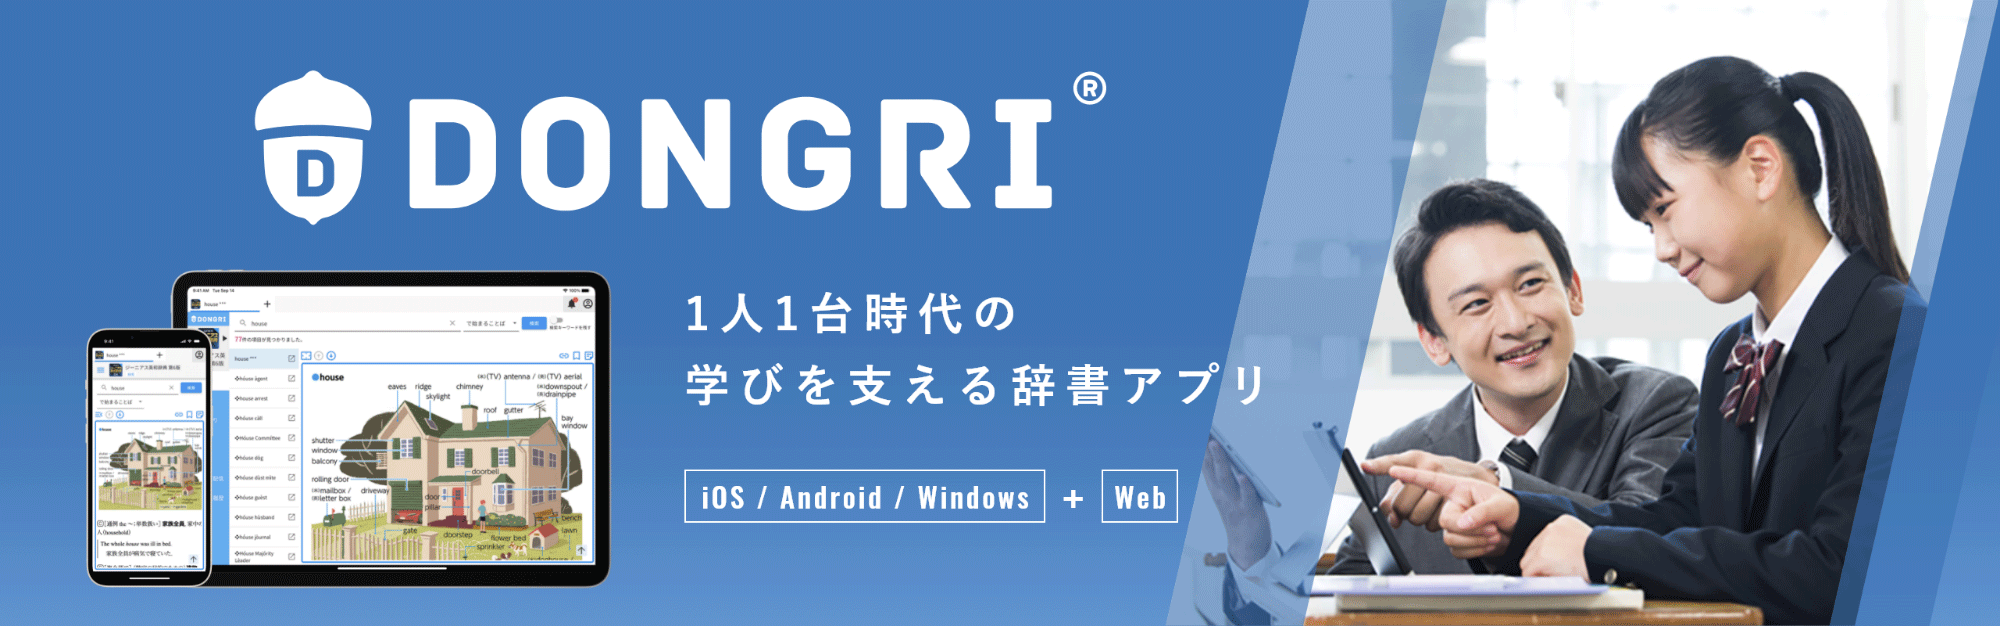 DONGRI 1人1台時代の学びを支える辞書アプリ　iOS/Android/Windows+Web